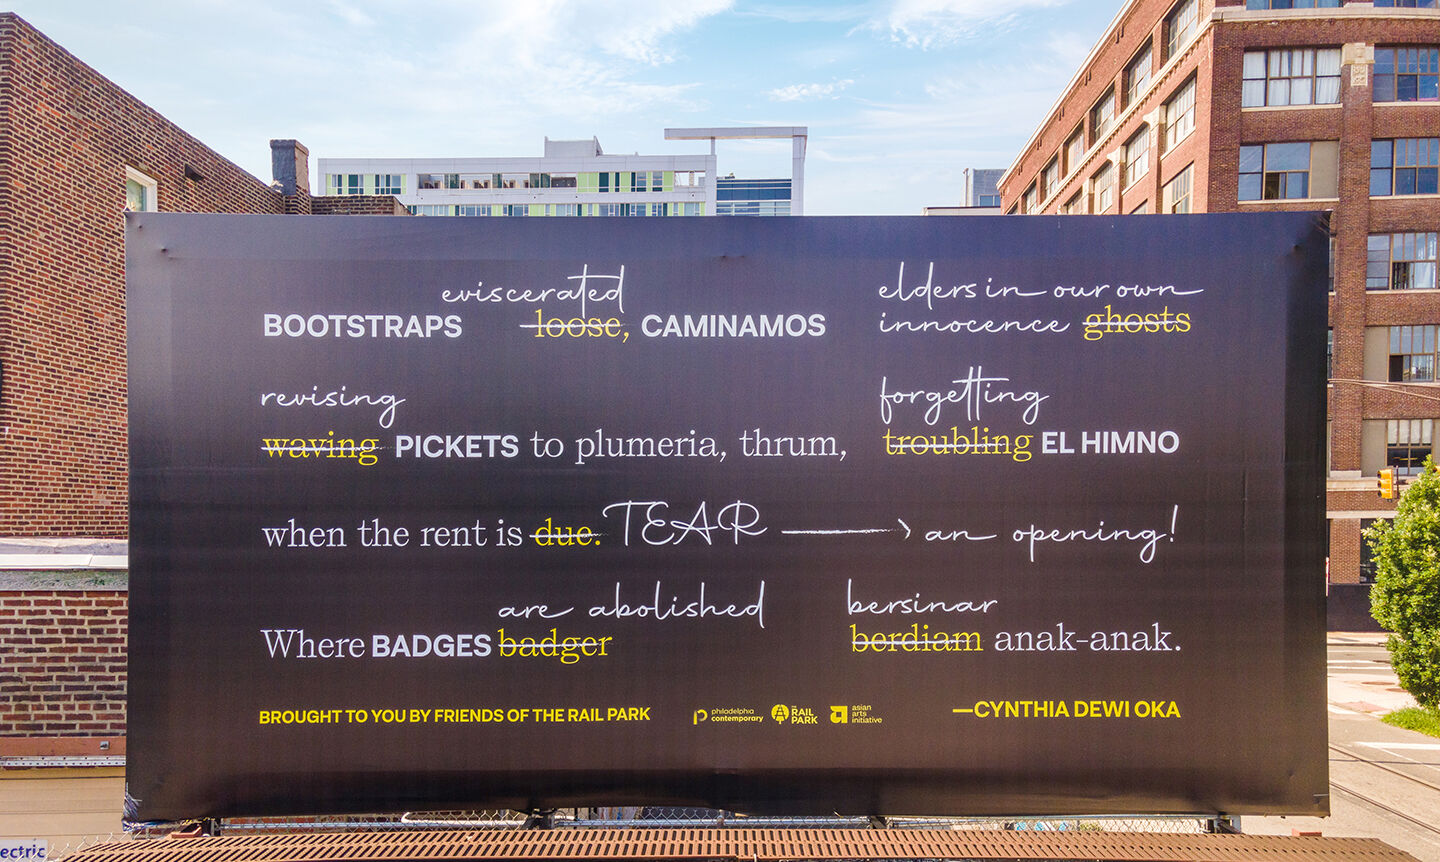 a black billboard with a layered visual poem by cynthia dewi oka